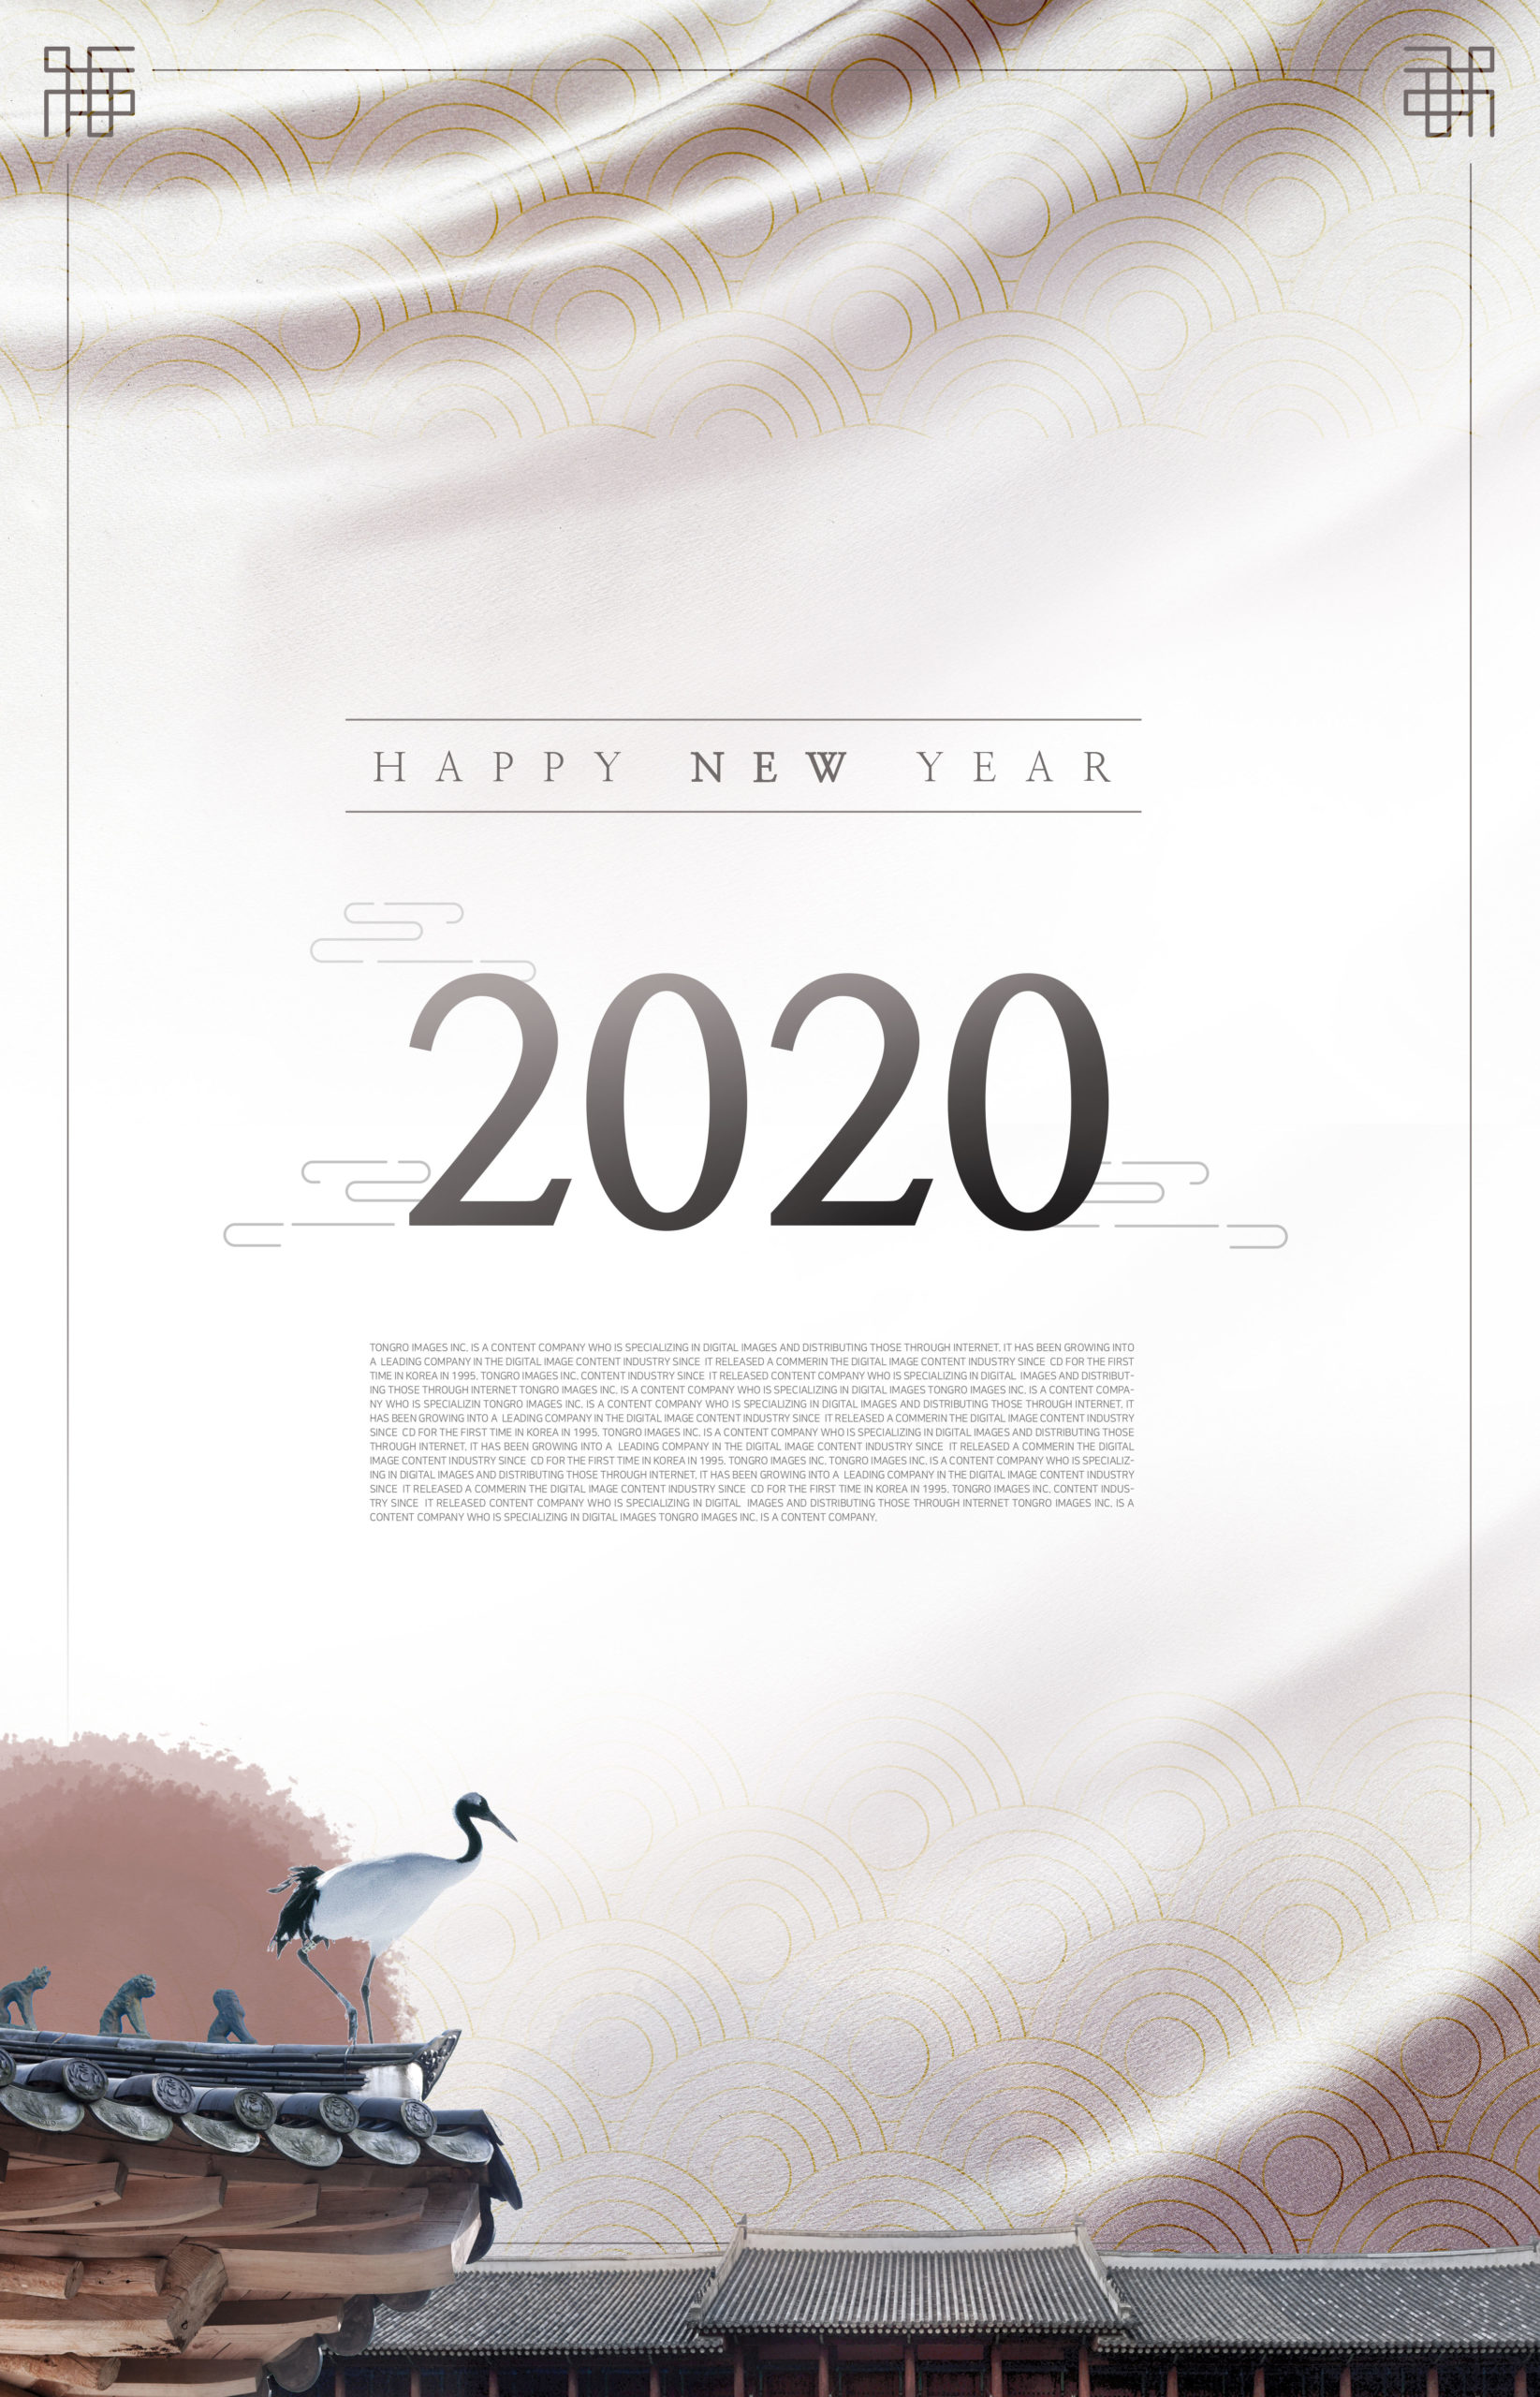 中式古典风格2020新年主题海报模板插图